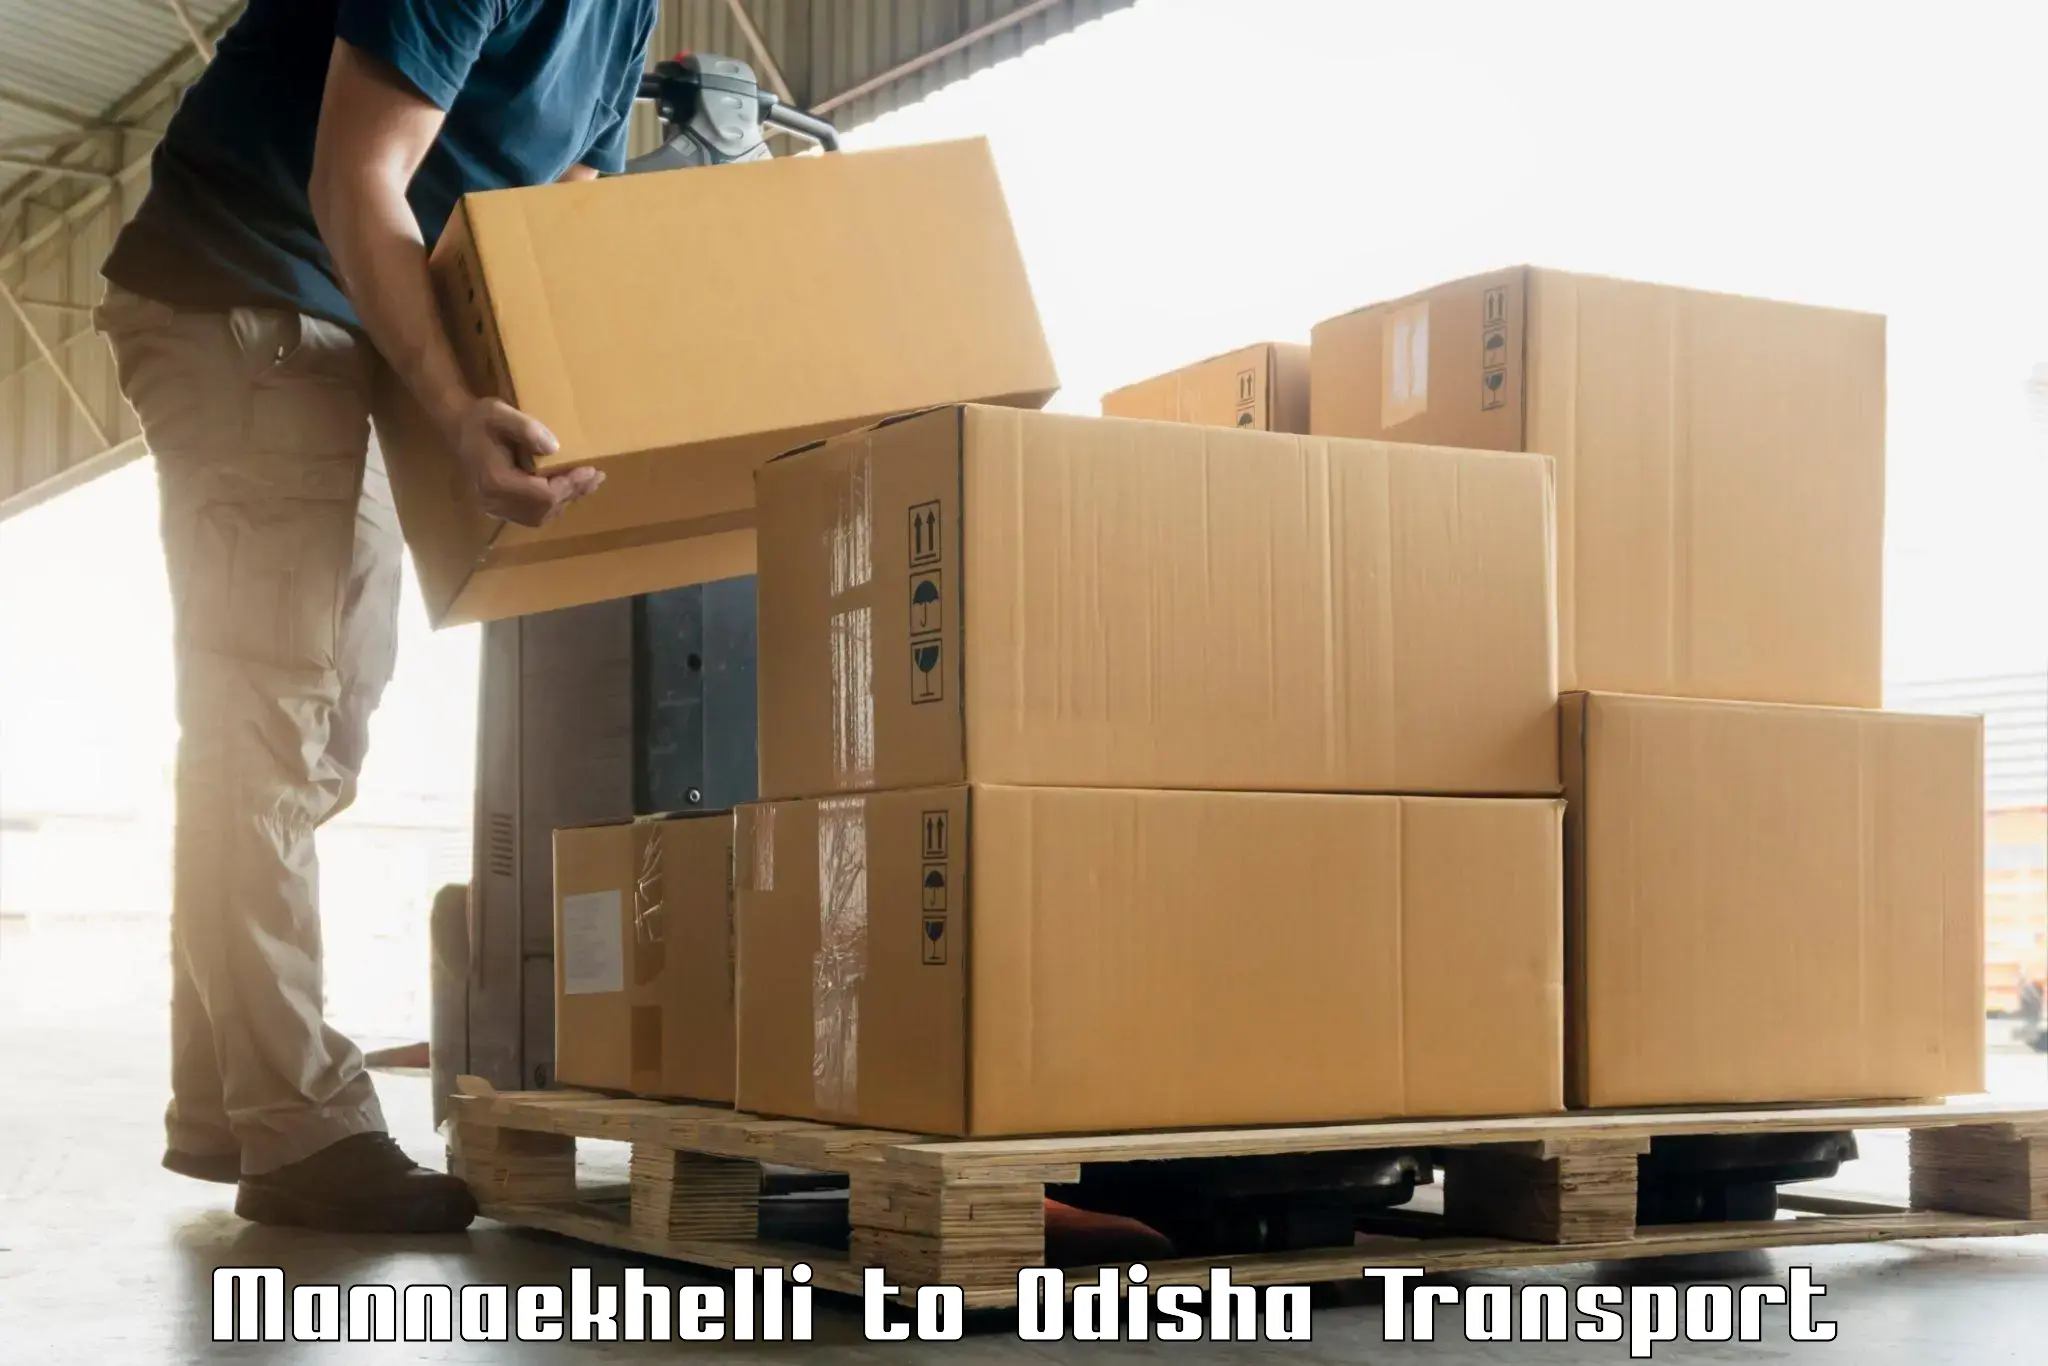 Intercity goods transport Mannaekhelli to Melchhamunda